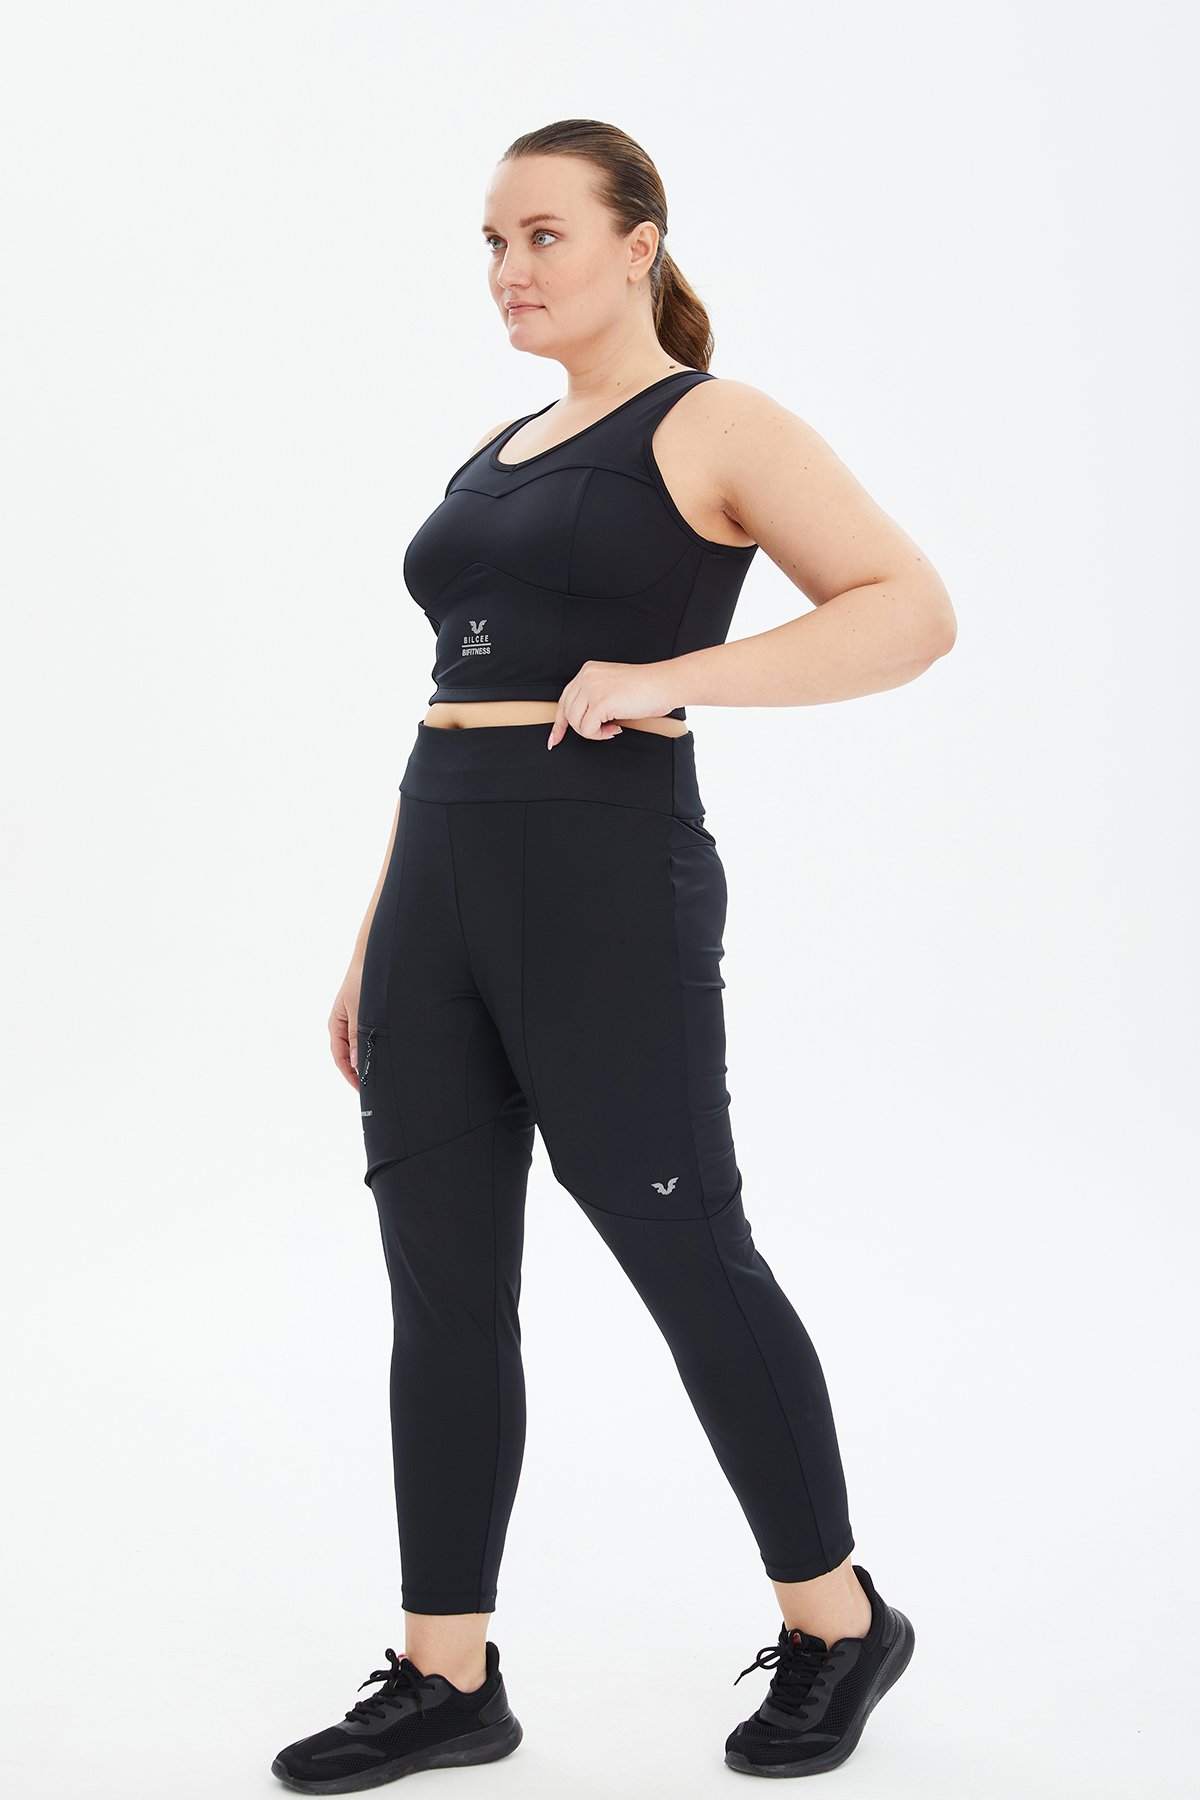 Kadın Siyah Fitness-Antrenman Spor Fashion Crop Top Toparlayıcı Bra Sporcu Sütyeni Büstiyer 0604 - 20